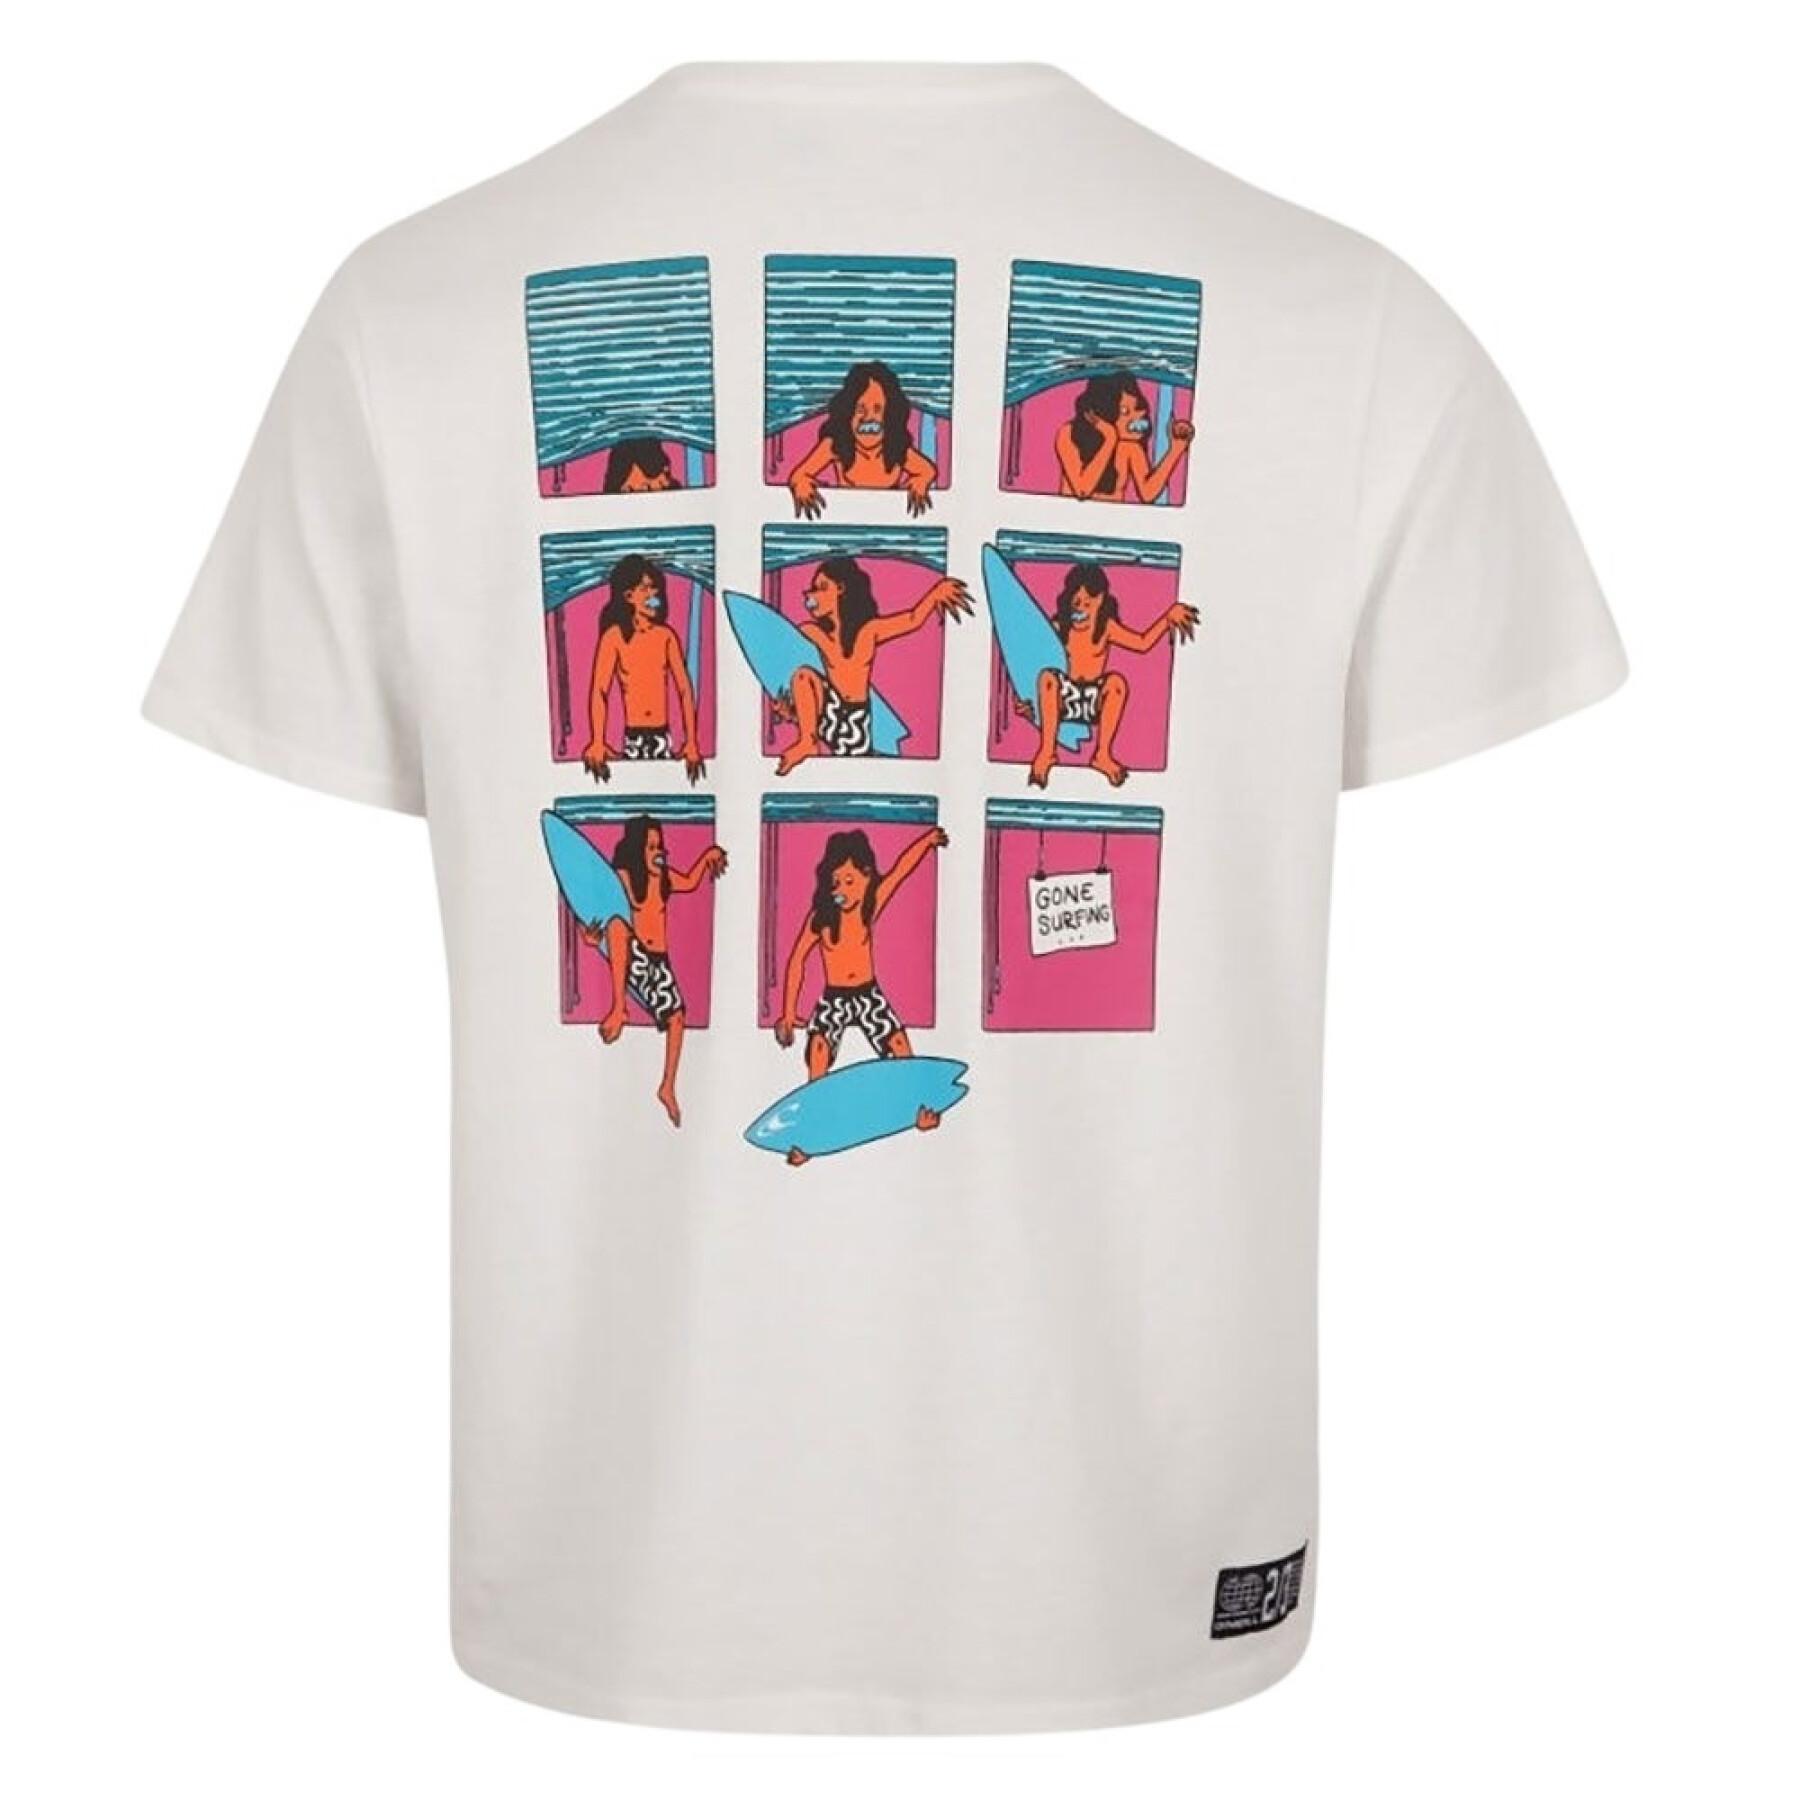 T-shirt O'Neill Window Surfer